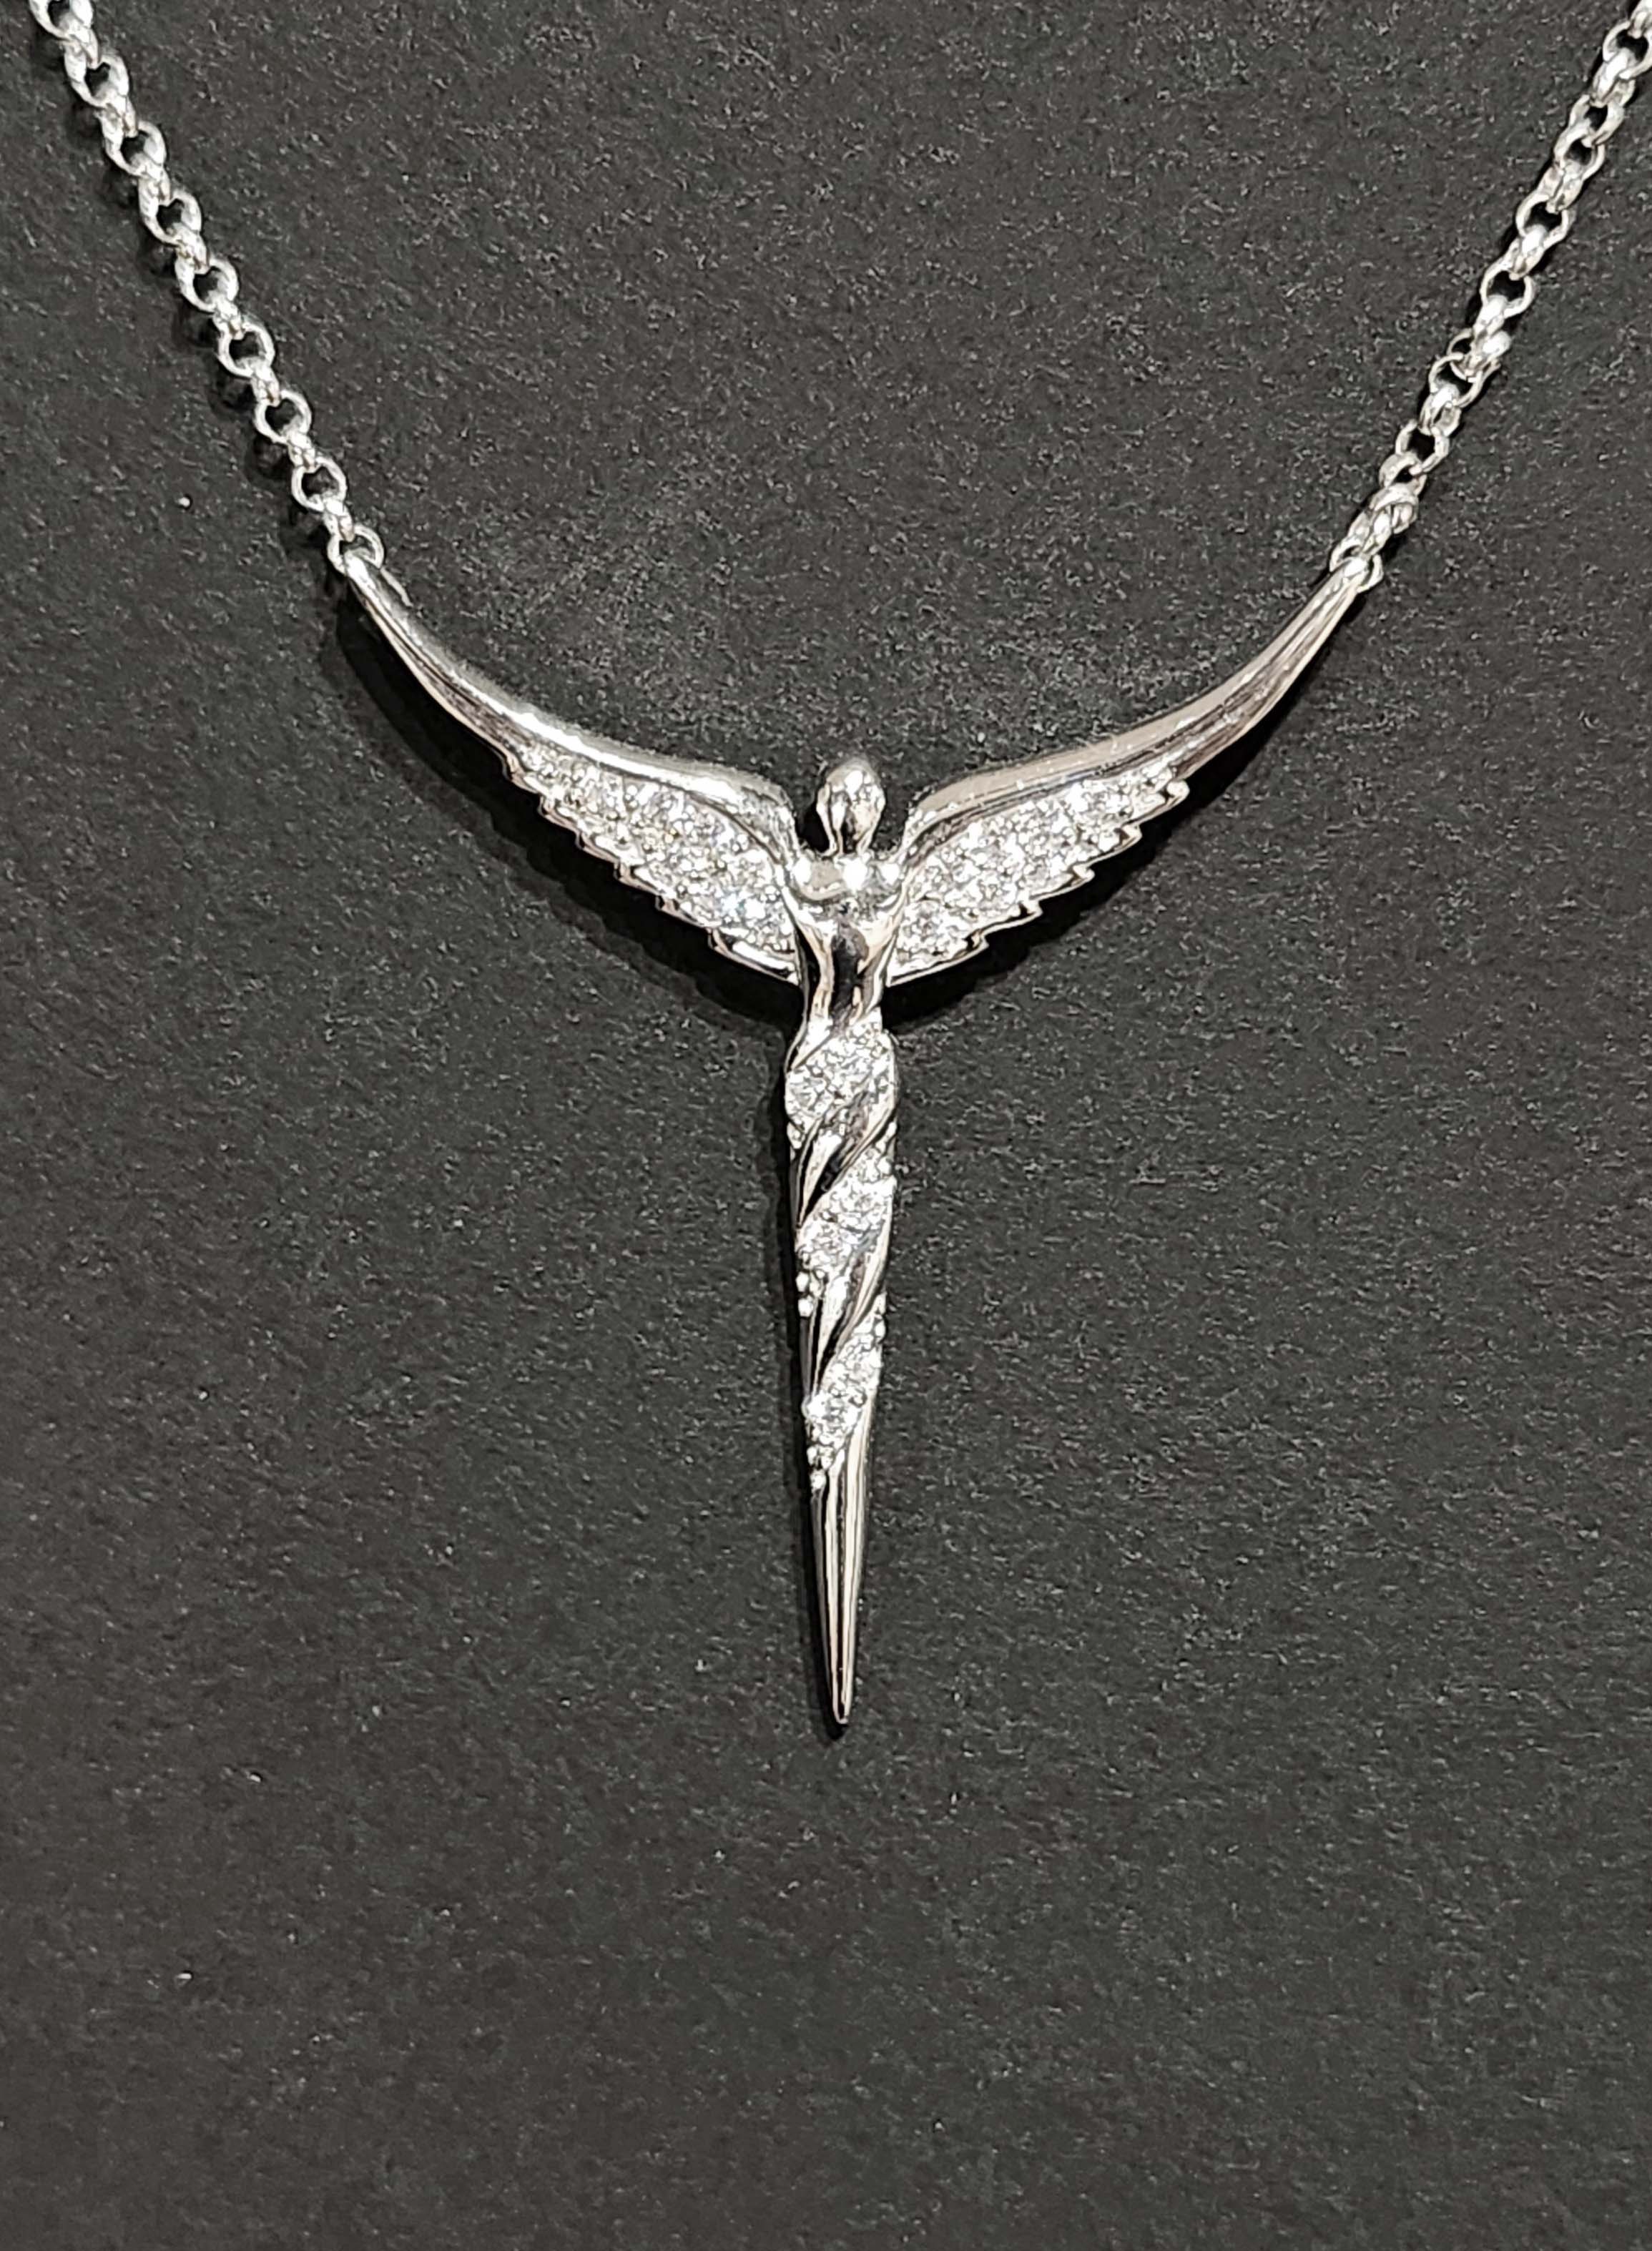 Illuminated Angel - Necklace